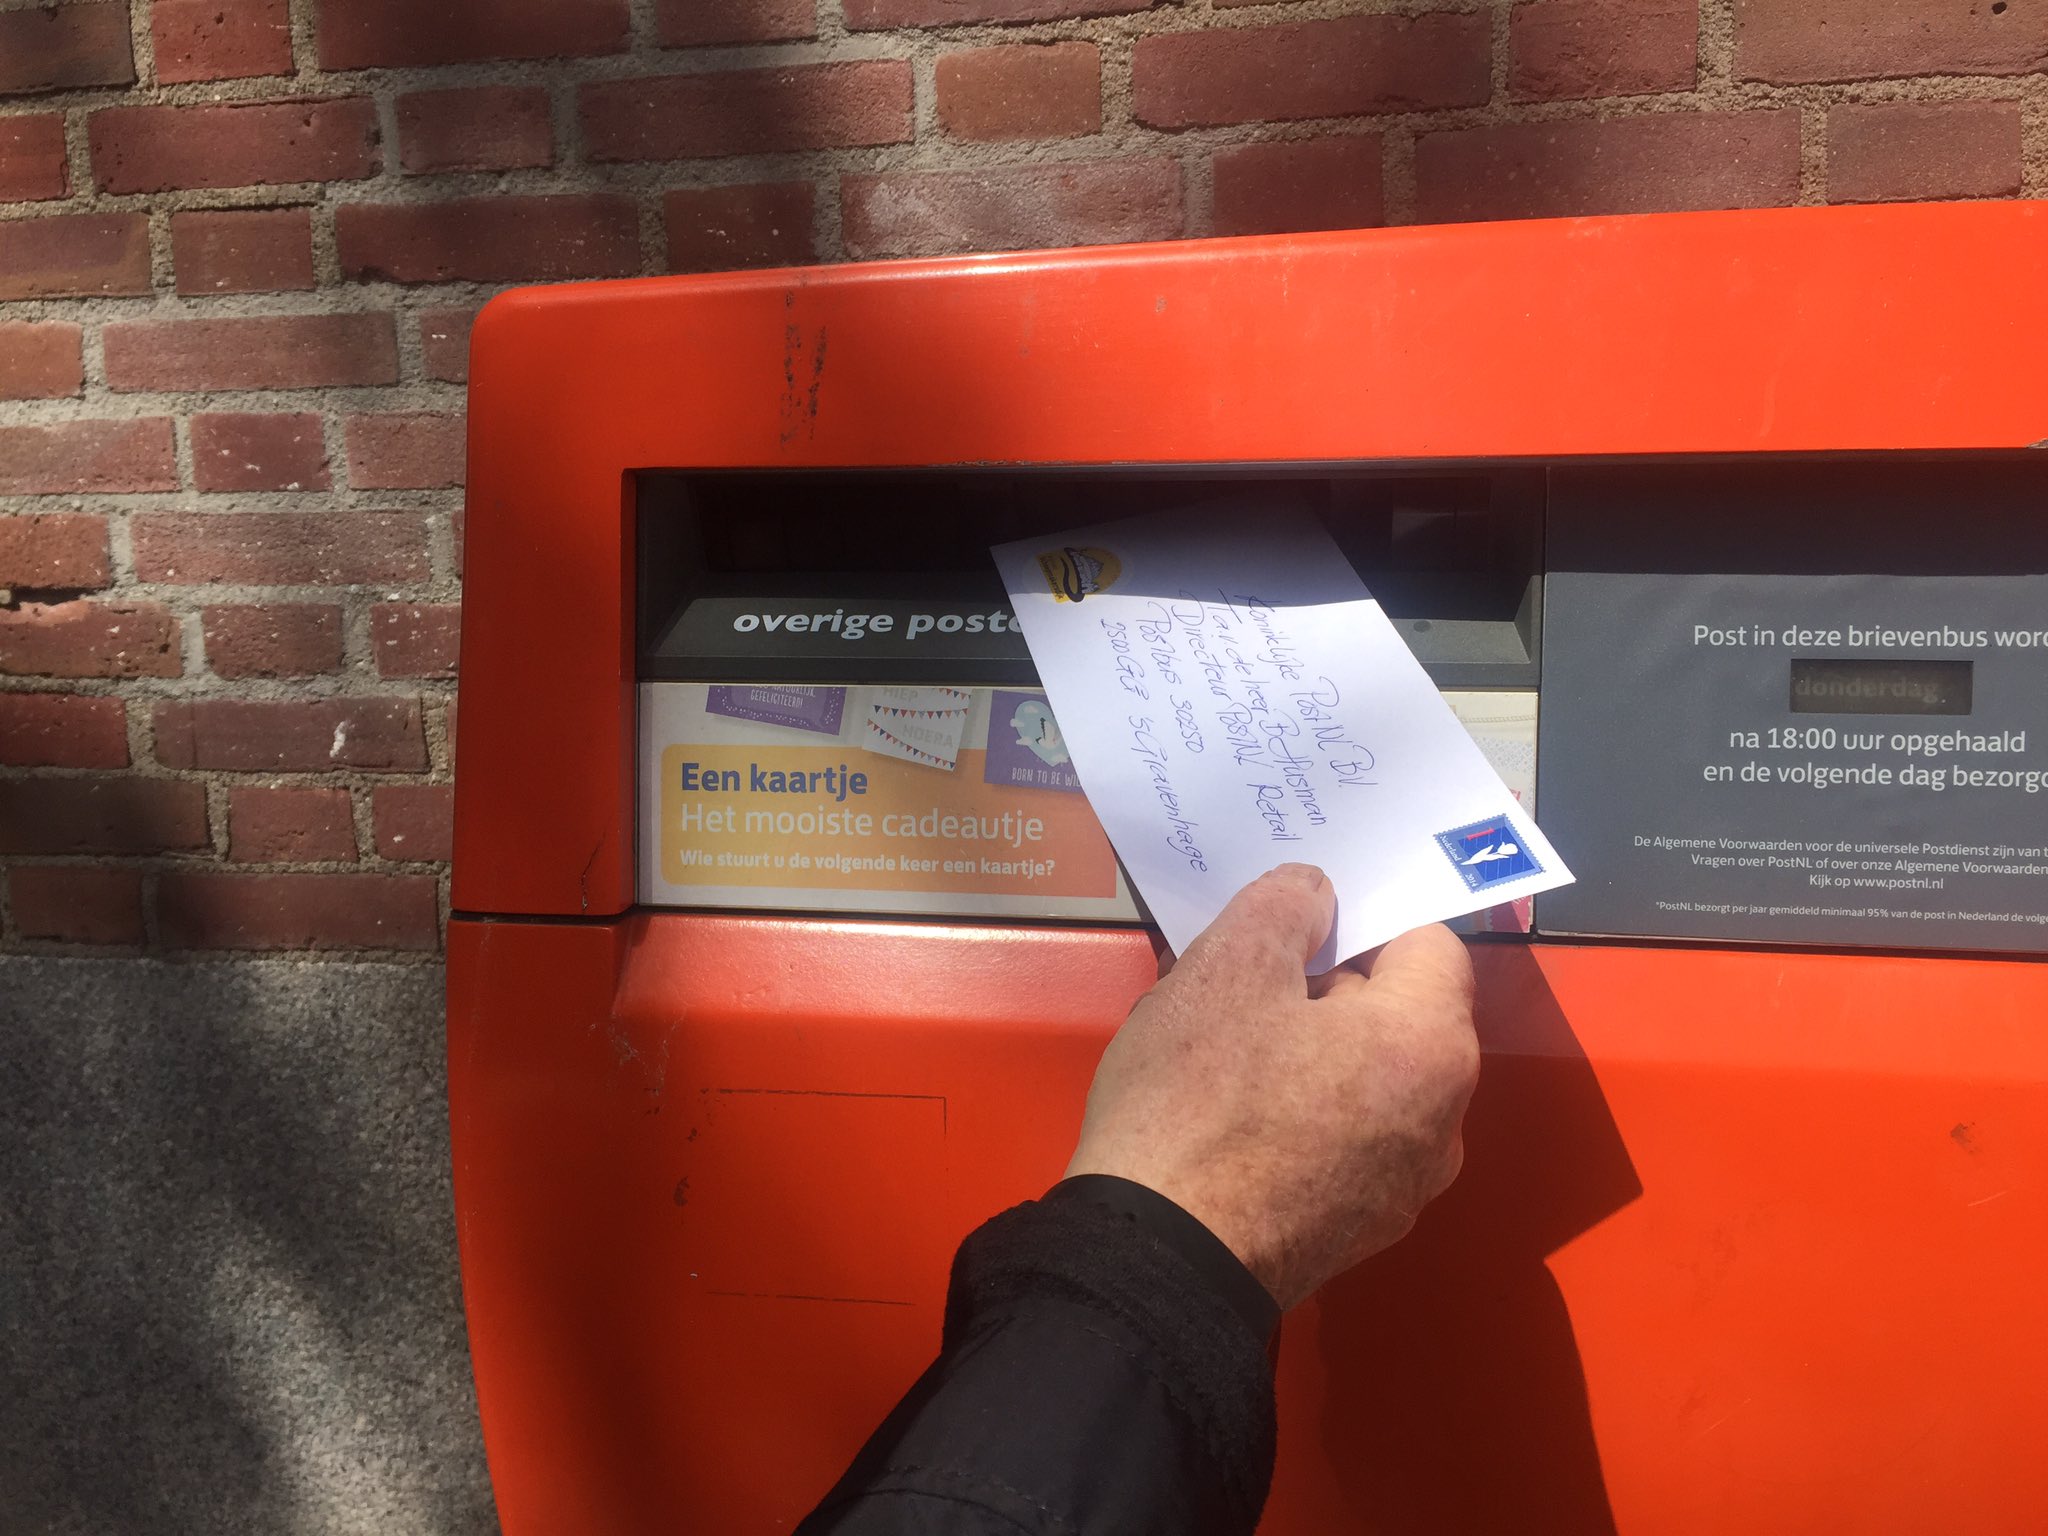 Albert Diederik on Twitter: "#brievenbus Eindelijk één gevonden ik post een  brief aan de heer BHusman van #PostNL met het verzoek voor terugplaatsing  van brievenbussen in wijken waar geen #brievenbus meer te